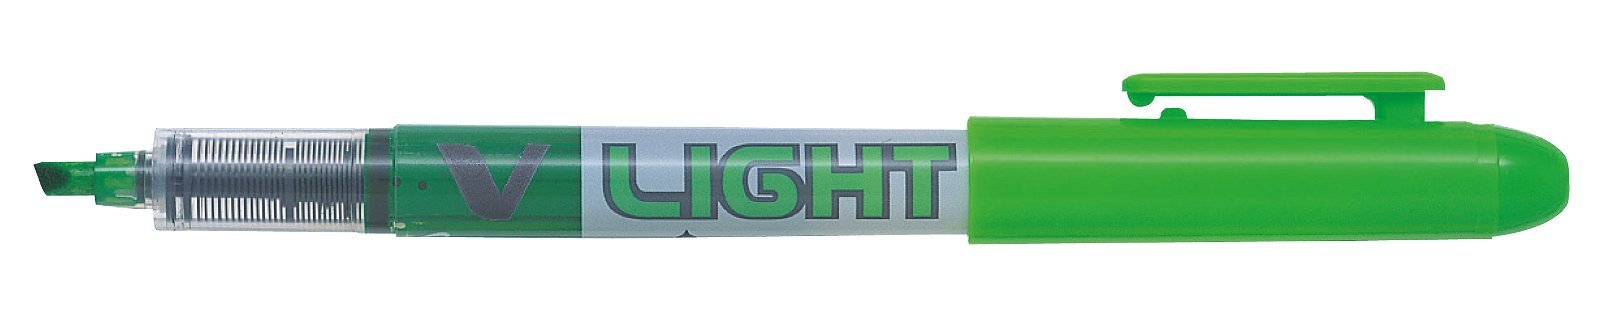 Pilot V Liquid Light tekstmarker gron